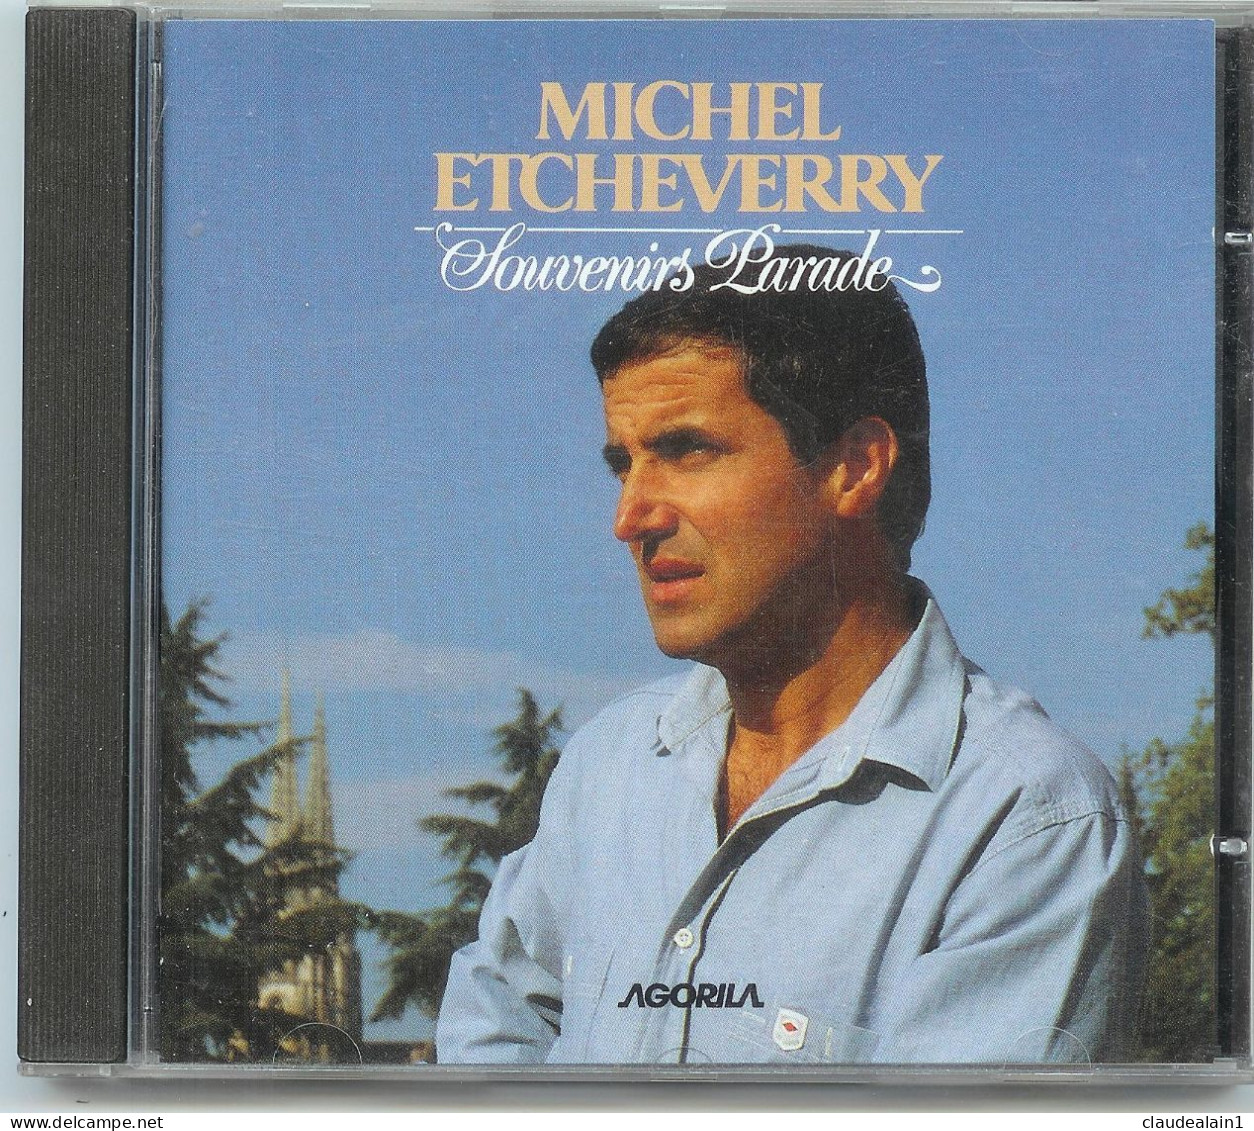 ALBUM CD MICHEL ETCHEVERRY - Souvenirs Parade (18 Titres) - Très Bon état - Other - French Music